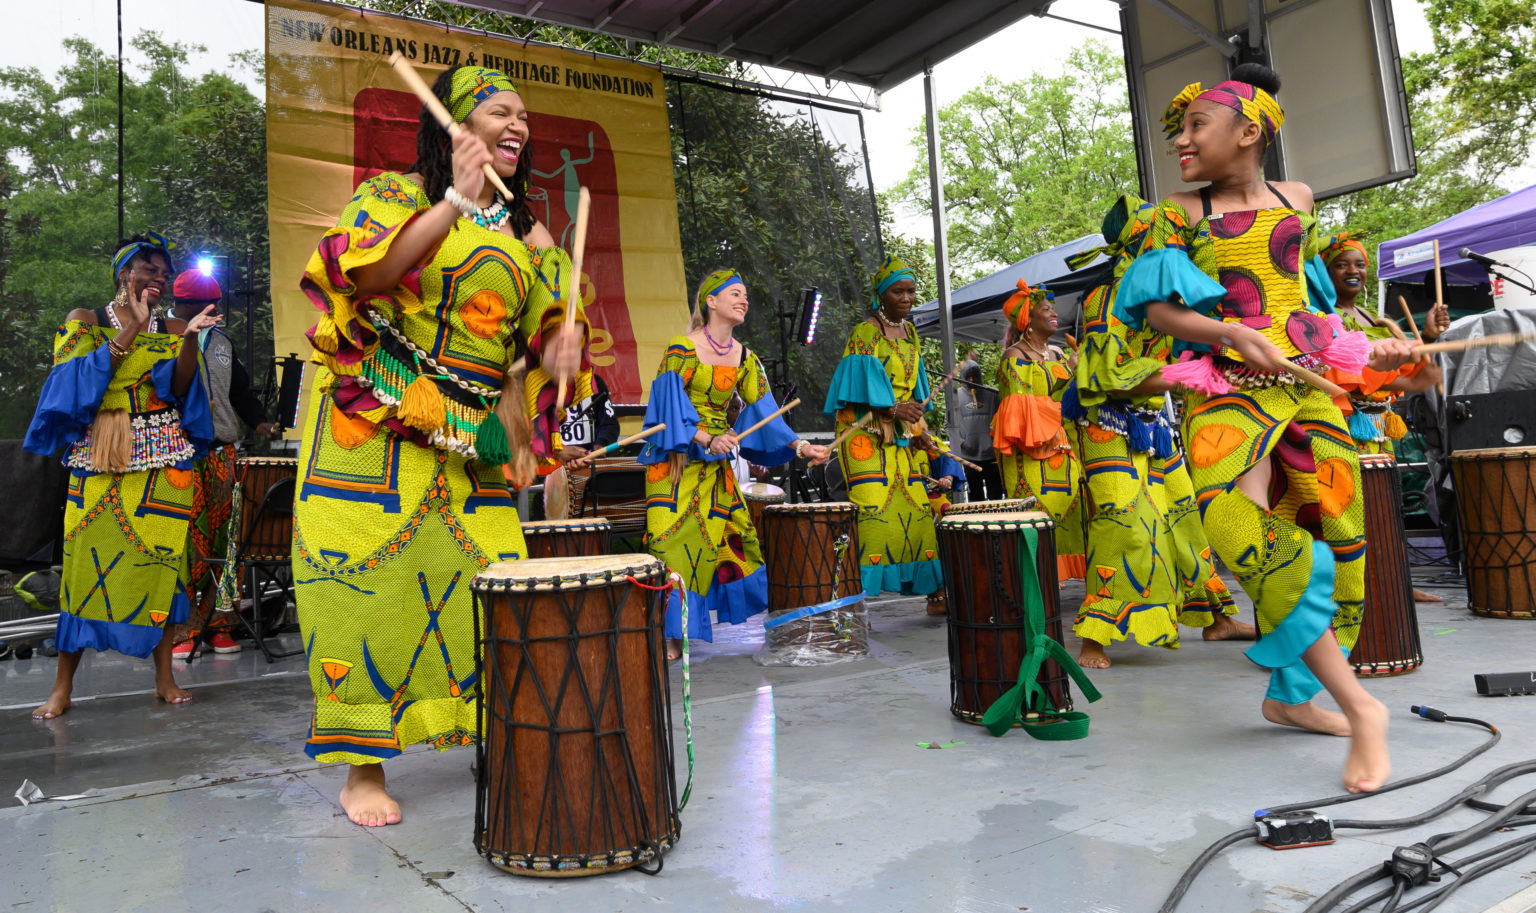 Congo Square Rhythms Festival